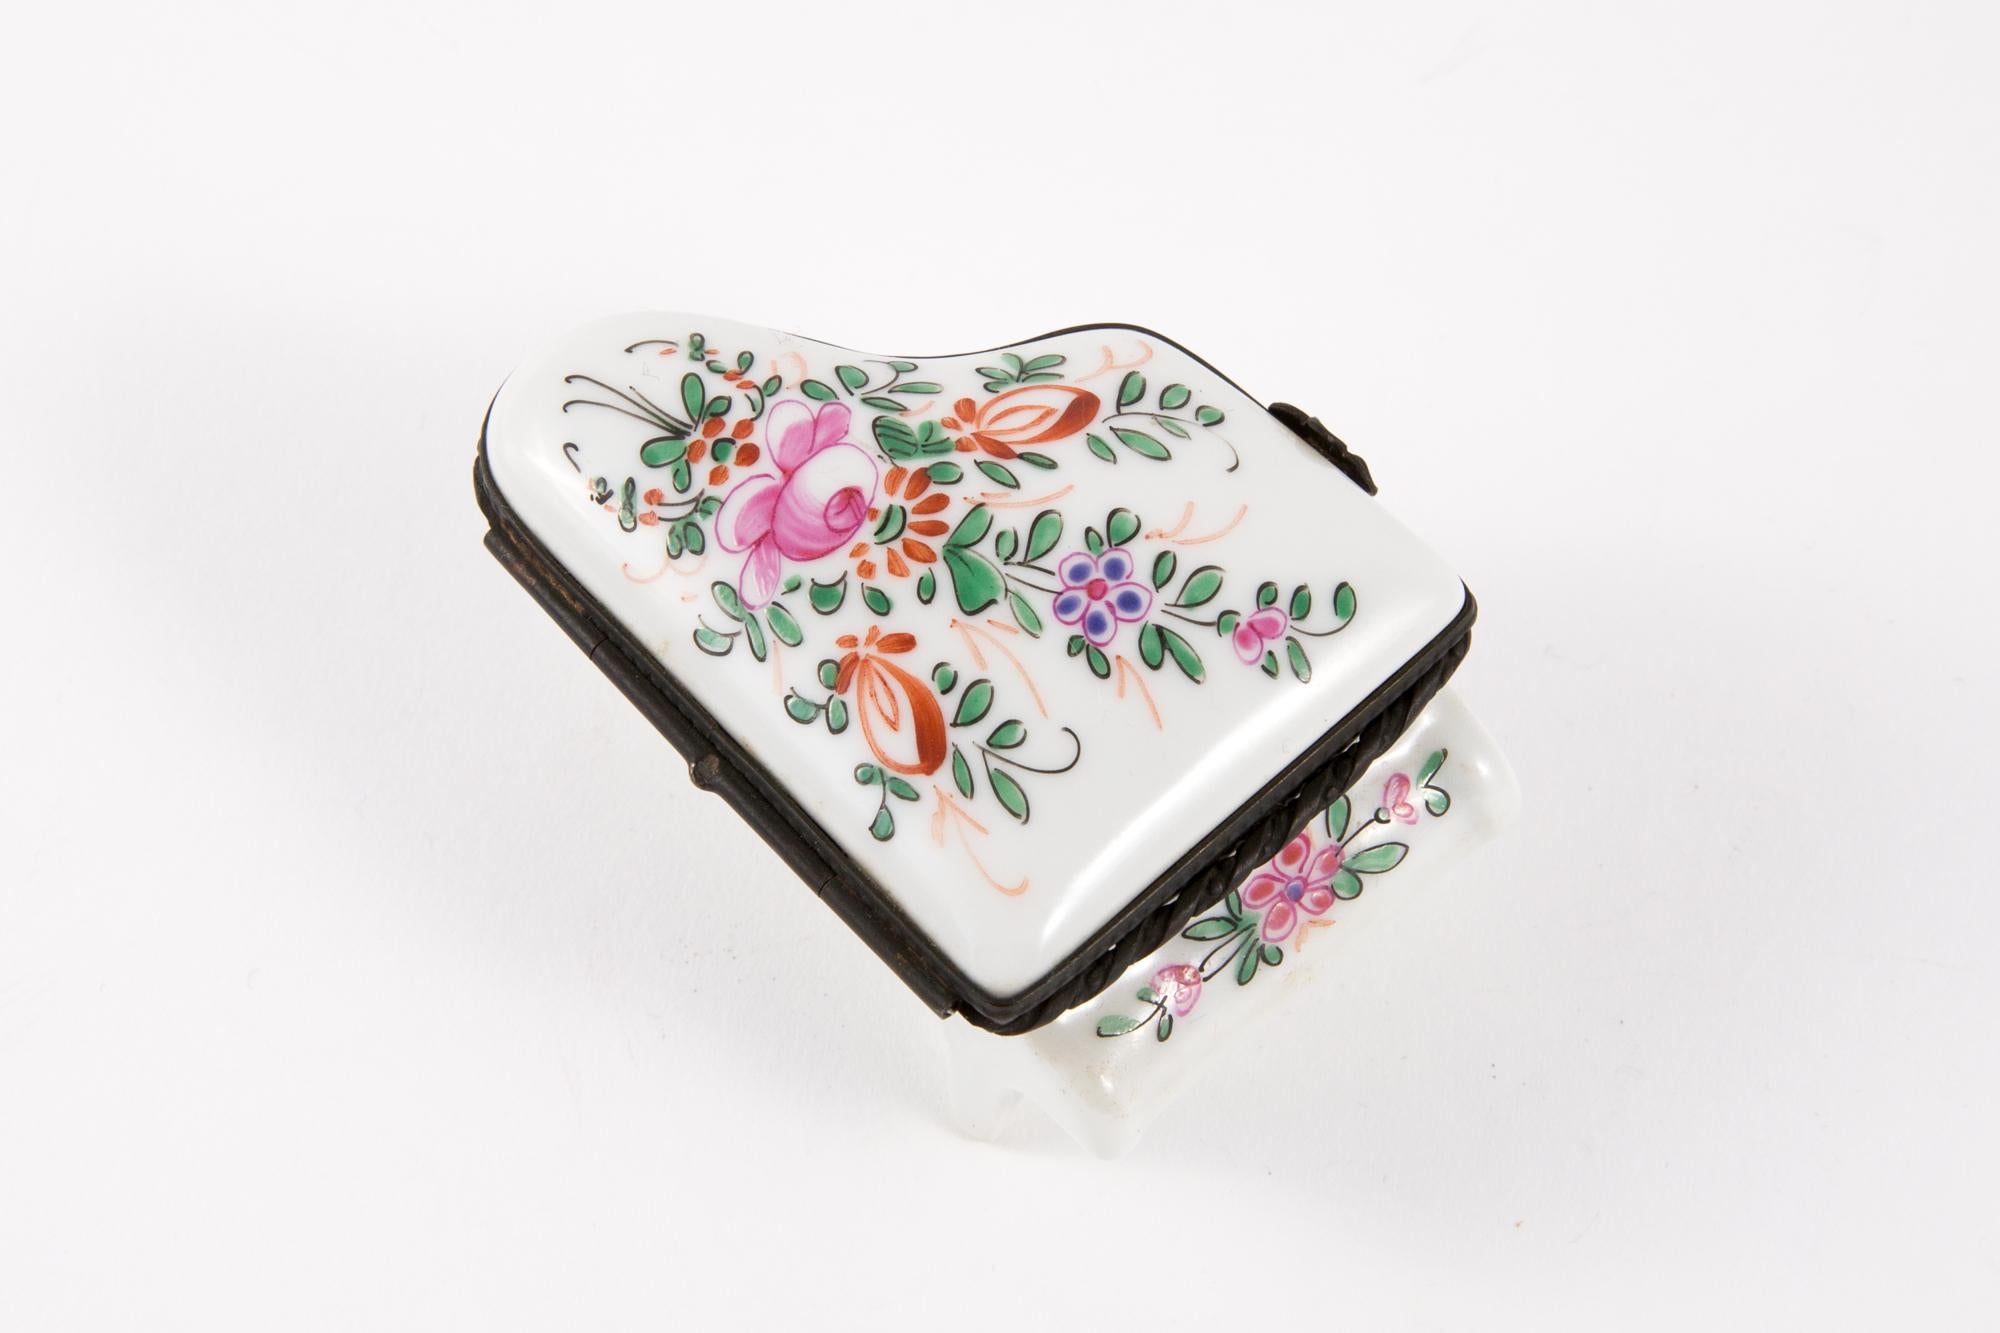 Pillenbox aus Porzellan in Form eines Klaviers mit Blumendekor und einem Haken in schwarzem Metallic-Ton, um sie offen zu halten.
In gutem Vintage-Zustand. Hergestellt in Frankreich. 
Höhe Geschlossen 1.7in. (4,5cm)
Maxi-Breite 5,5 cm (2 Zoll)
Maxi